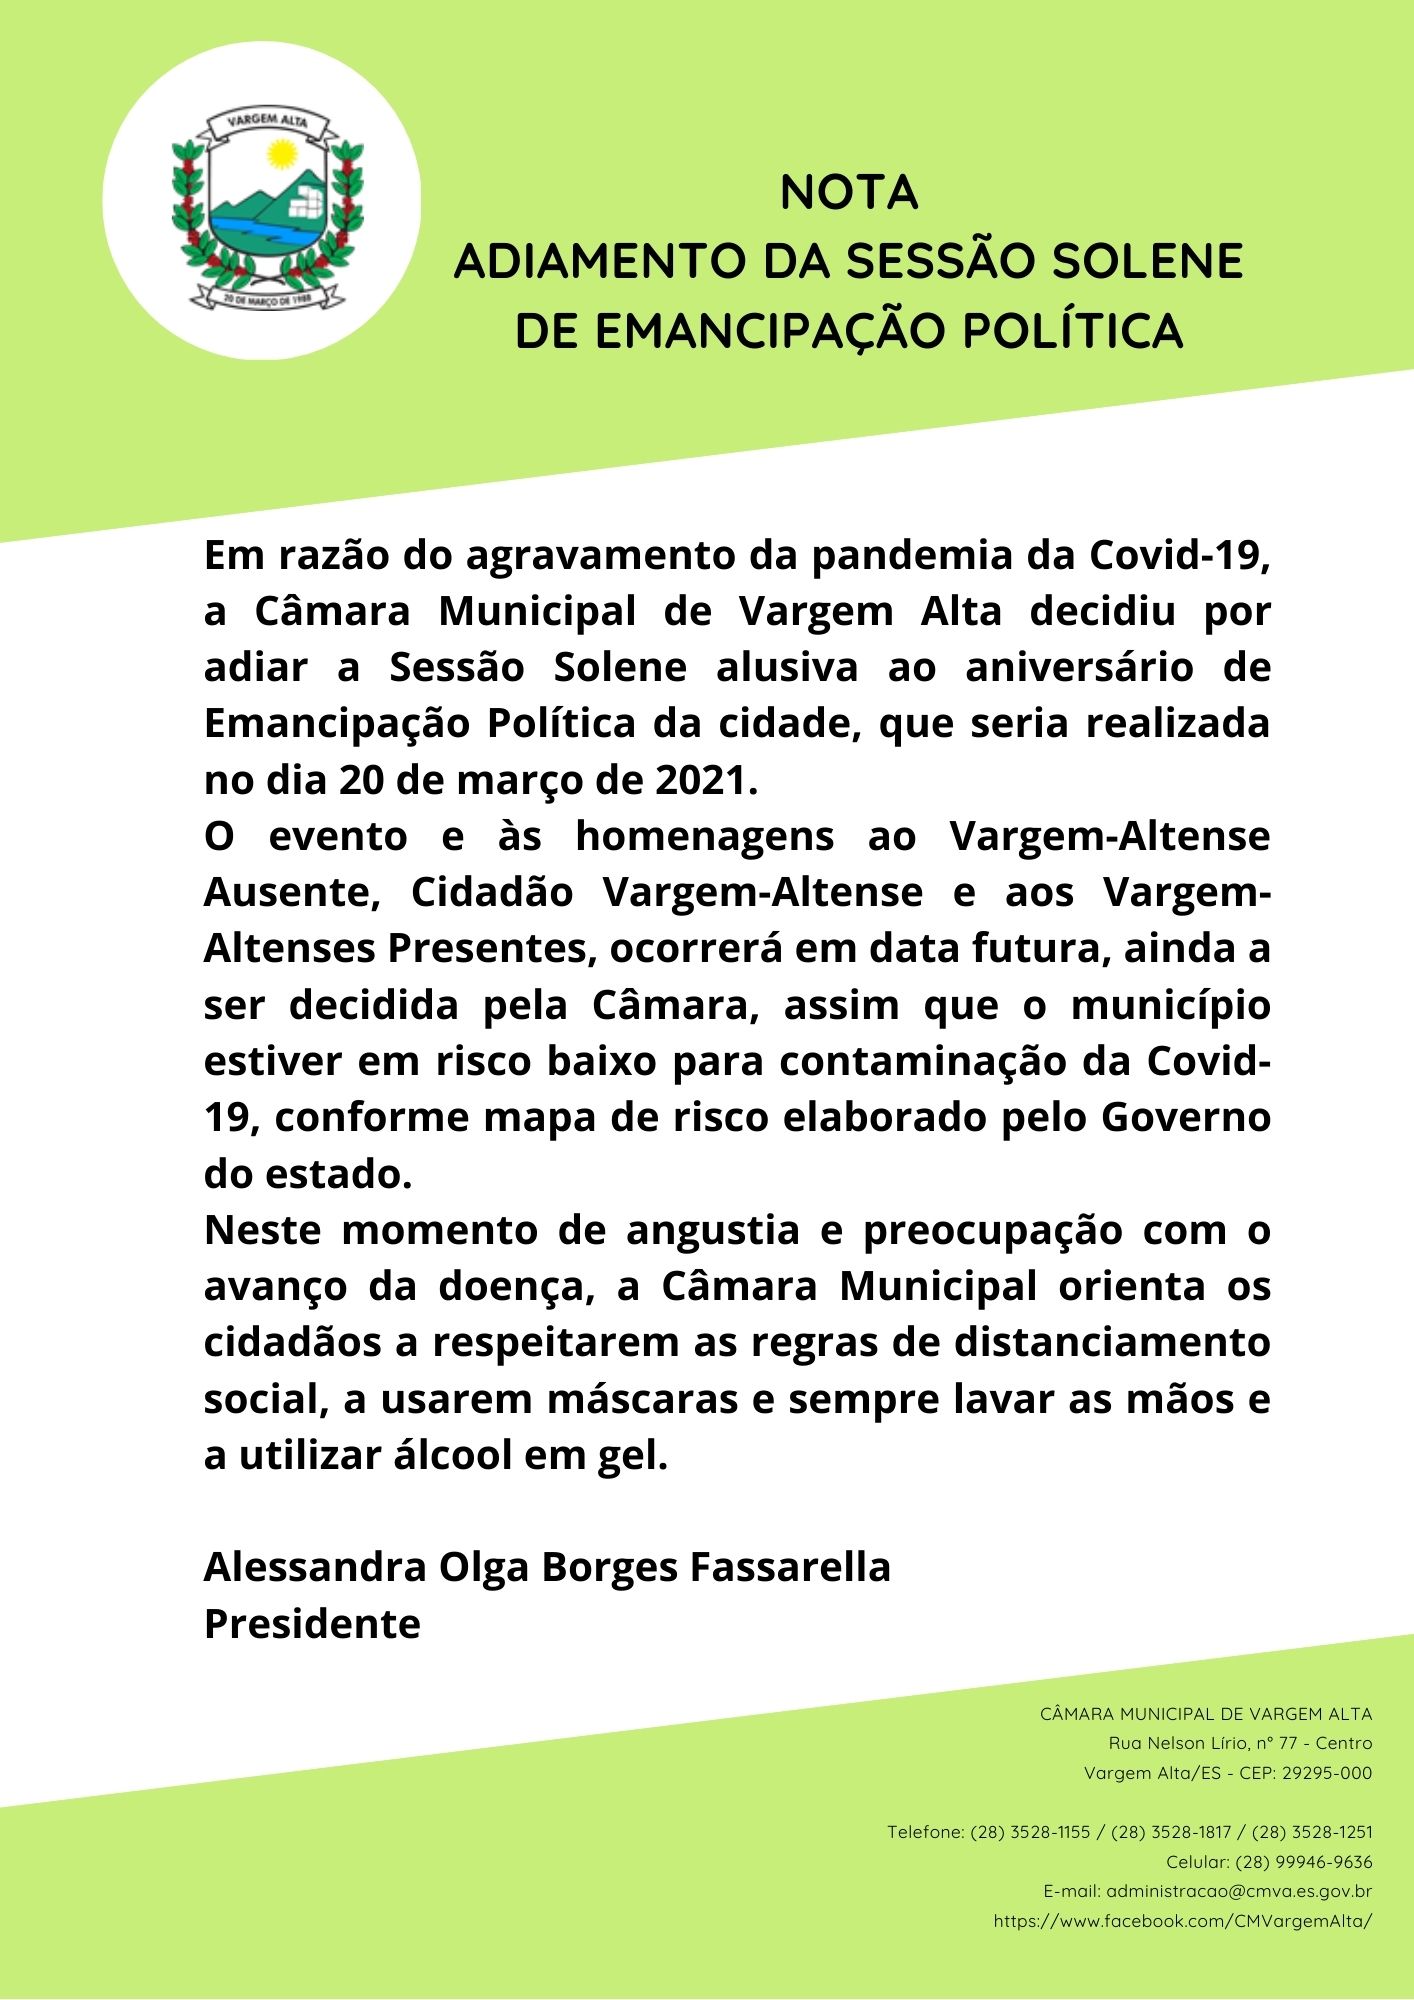 NOTA  - ADIAMENTO DA SESSÃO SOLENE DE EMANCIPAÇÃO POLÍTICA